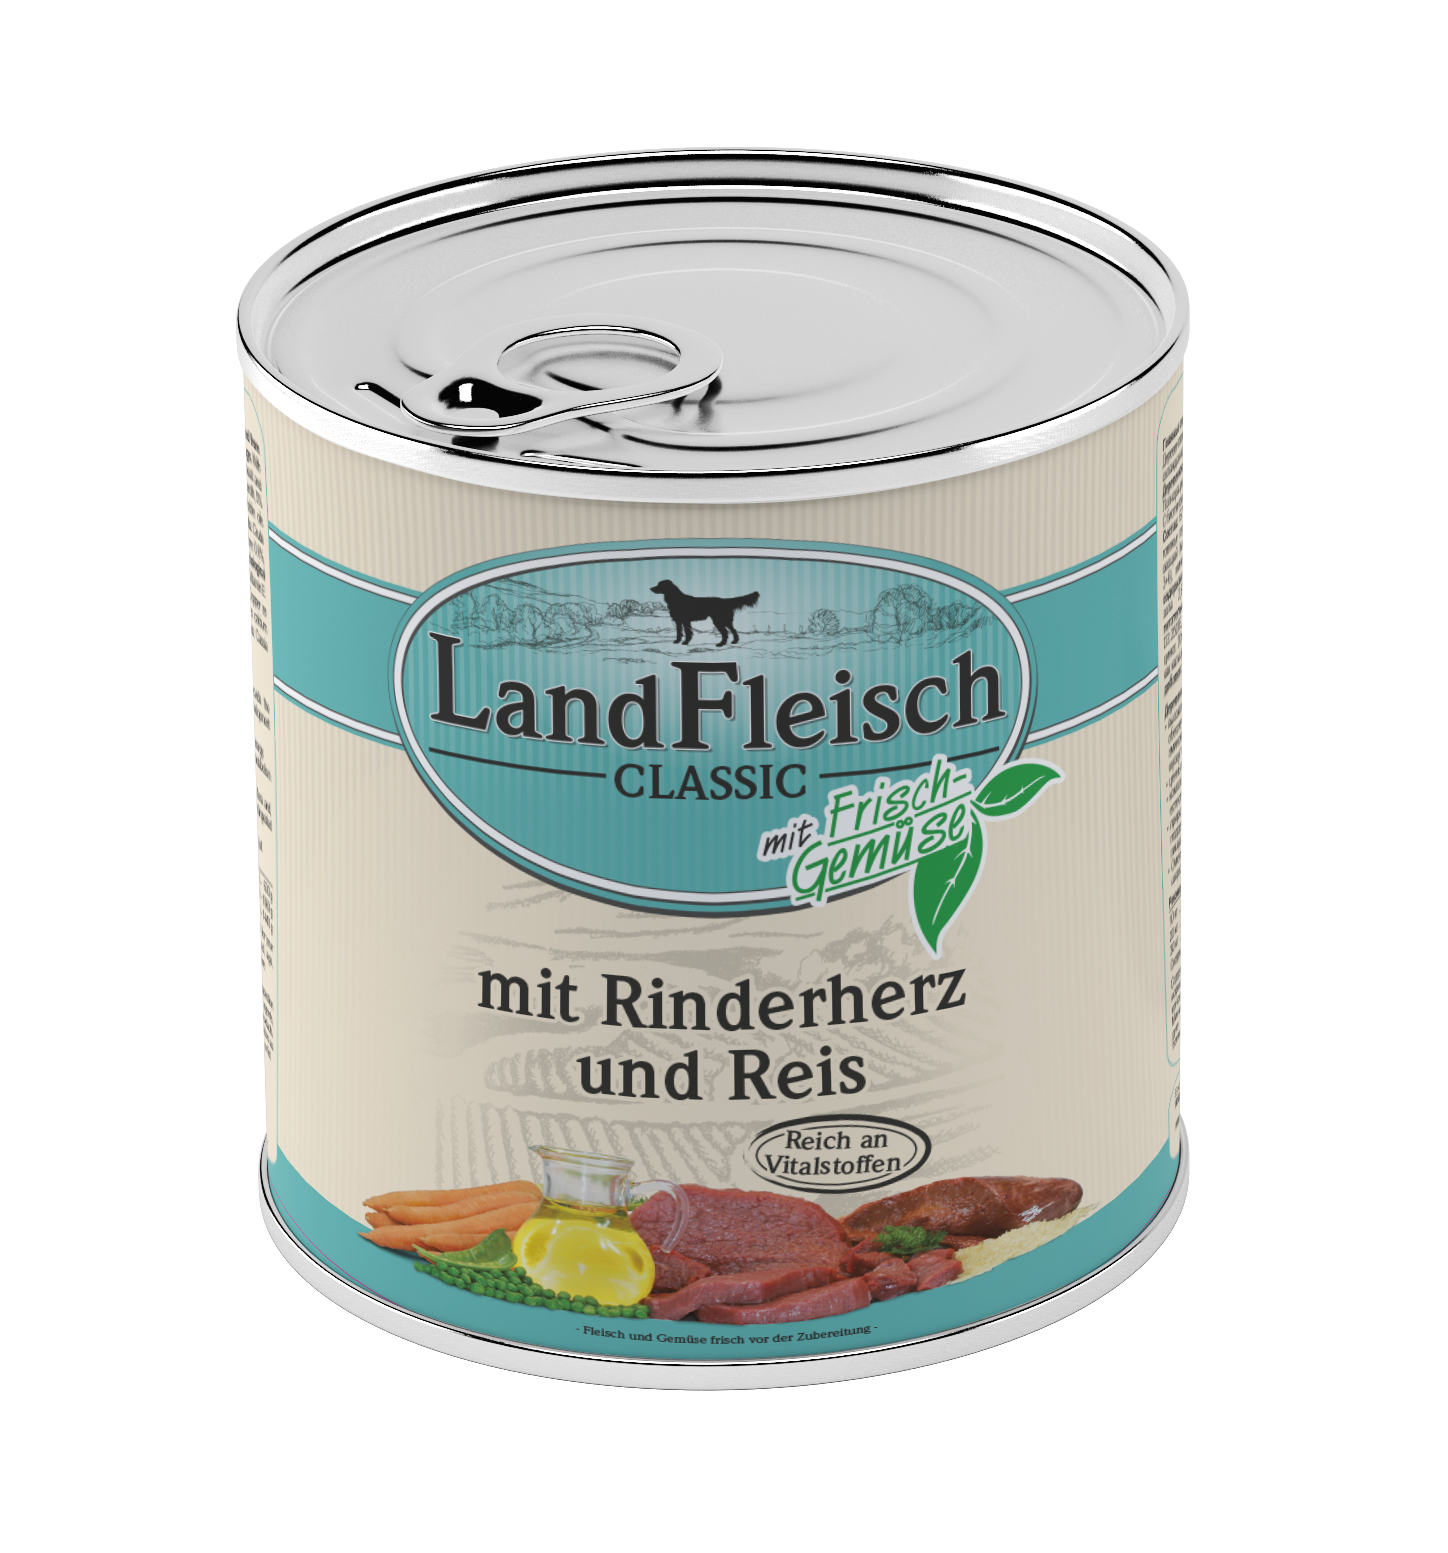 LandFleisch Classic Rinderherz & Reis mit Frischgemüse 800g